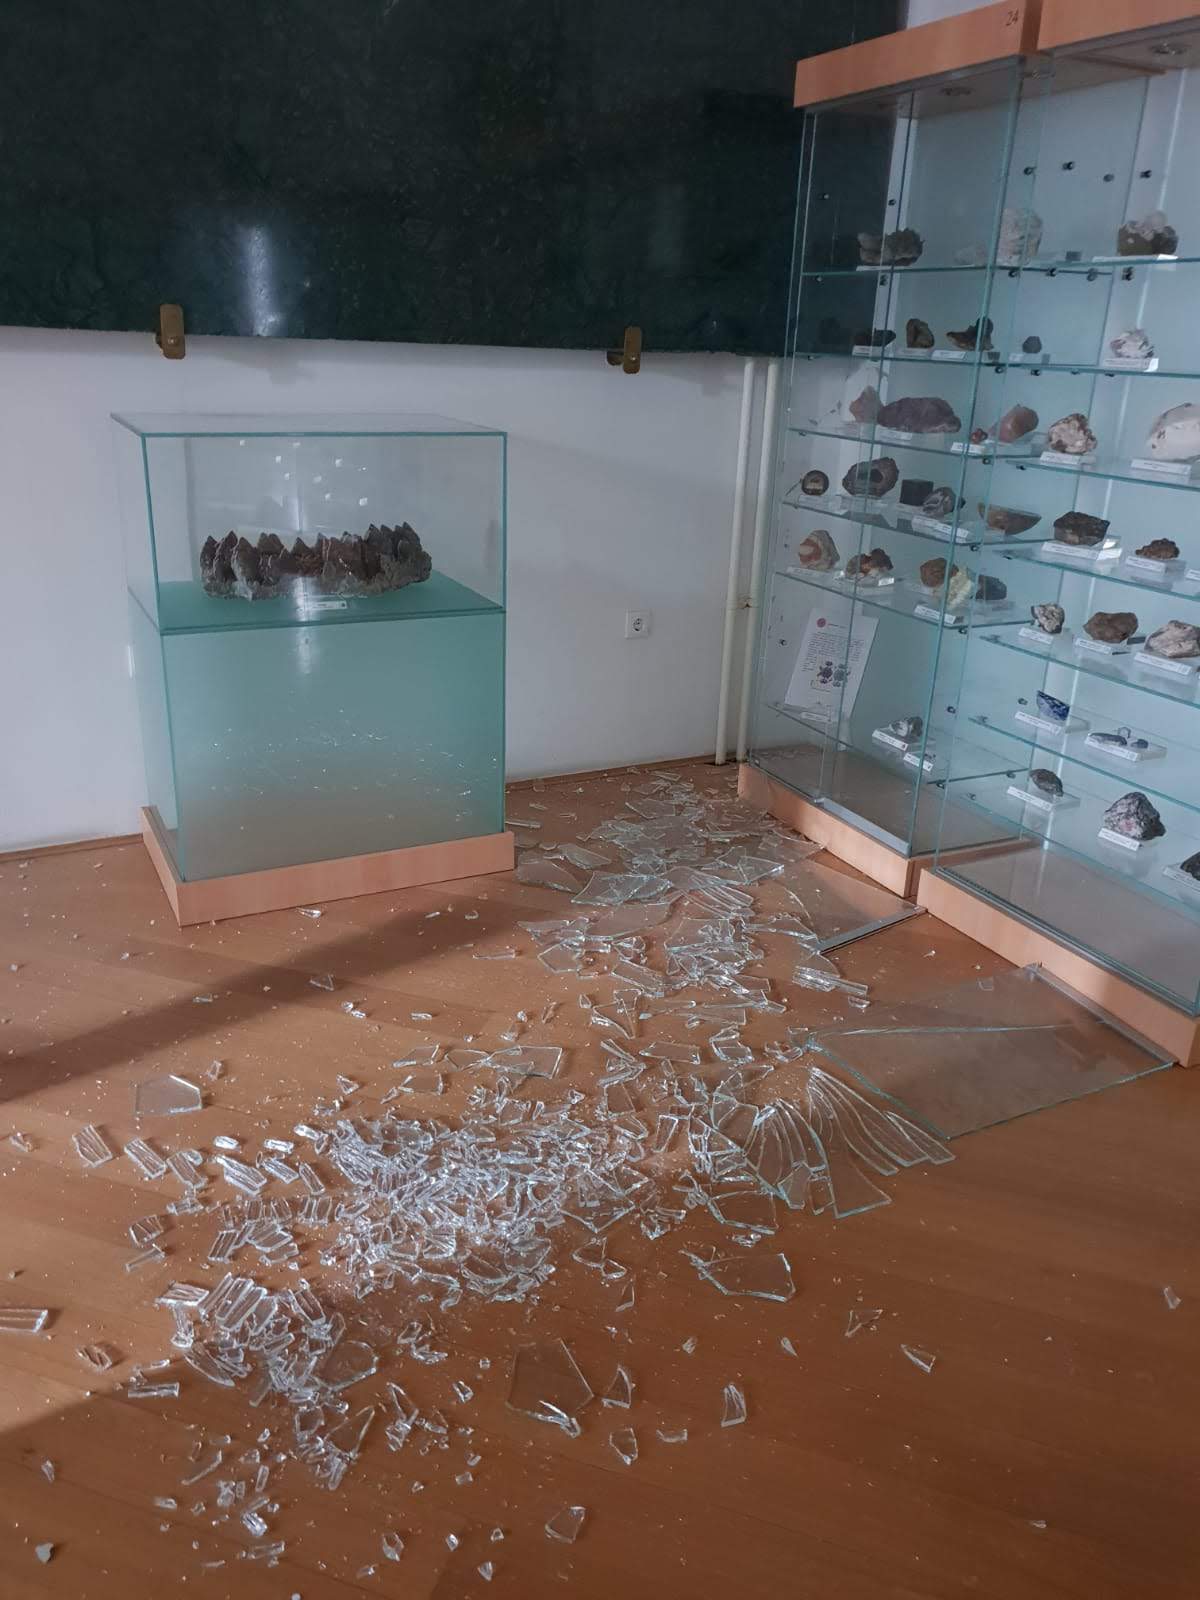 Hrvatski prirodoslovni muzej teško stradao u potresu